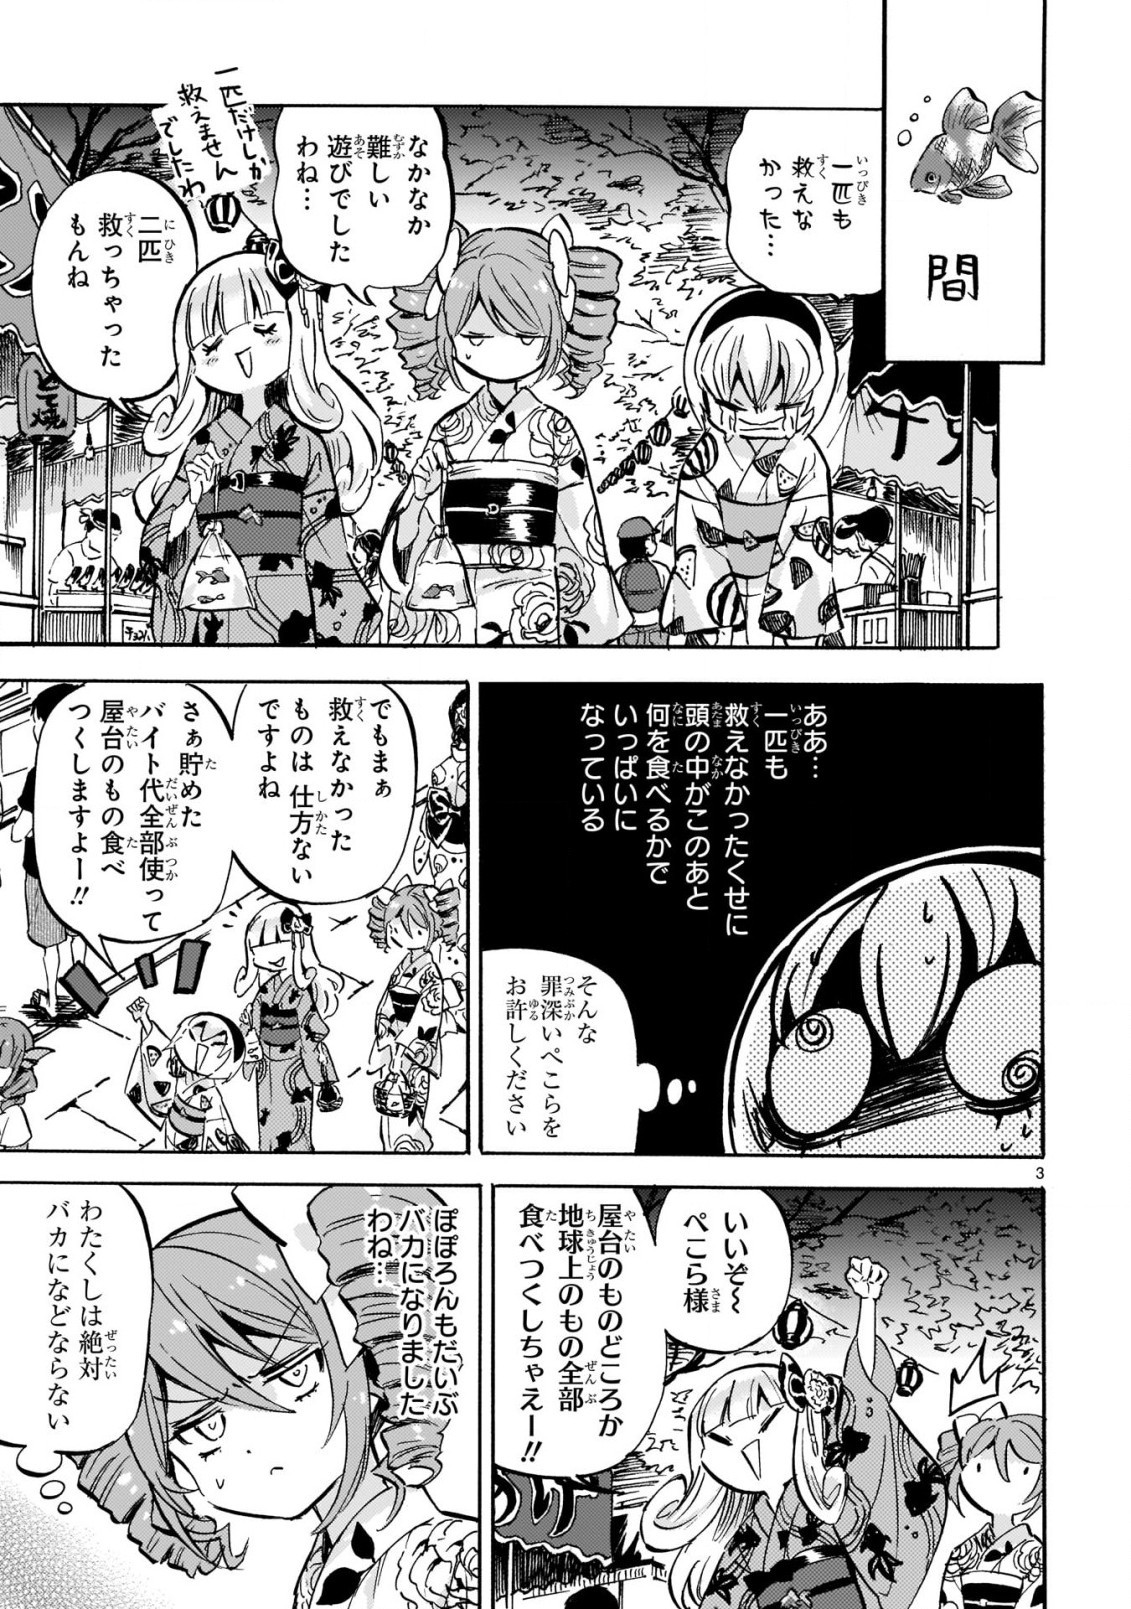 Jashin-chan Dropkick - Chapter 201 - Page 3